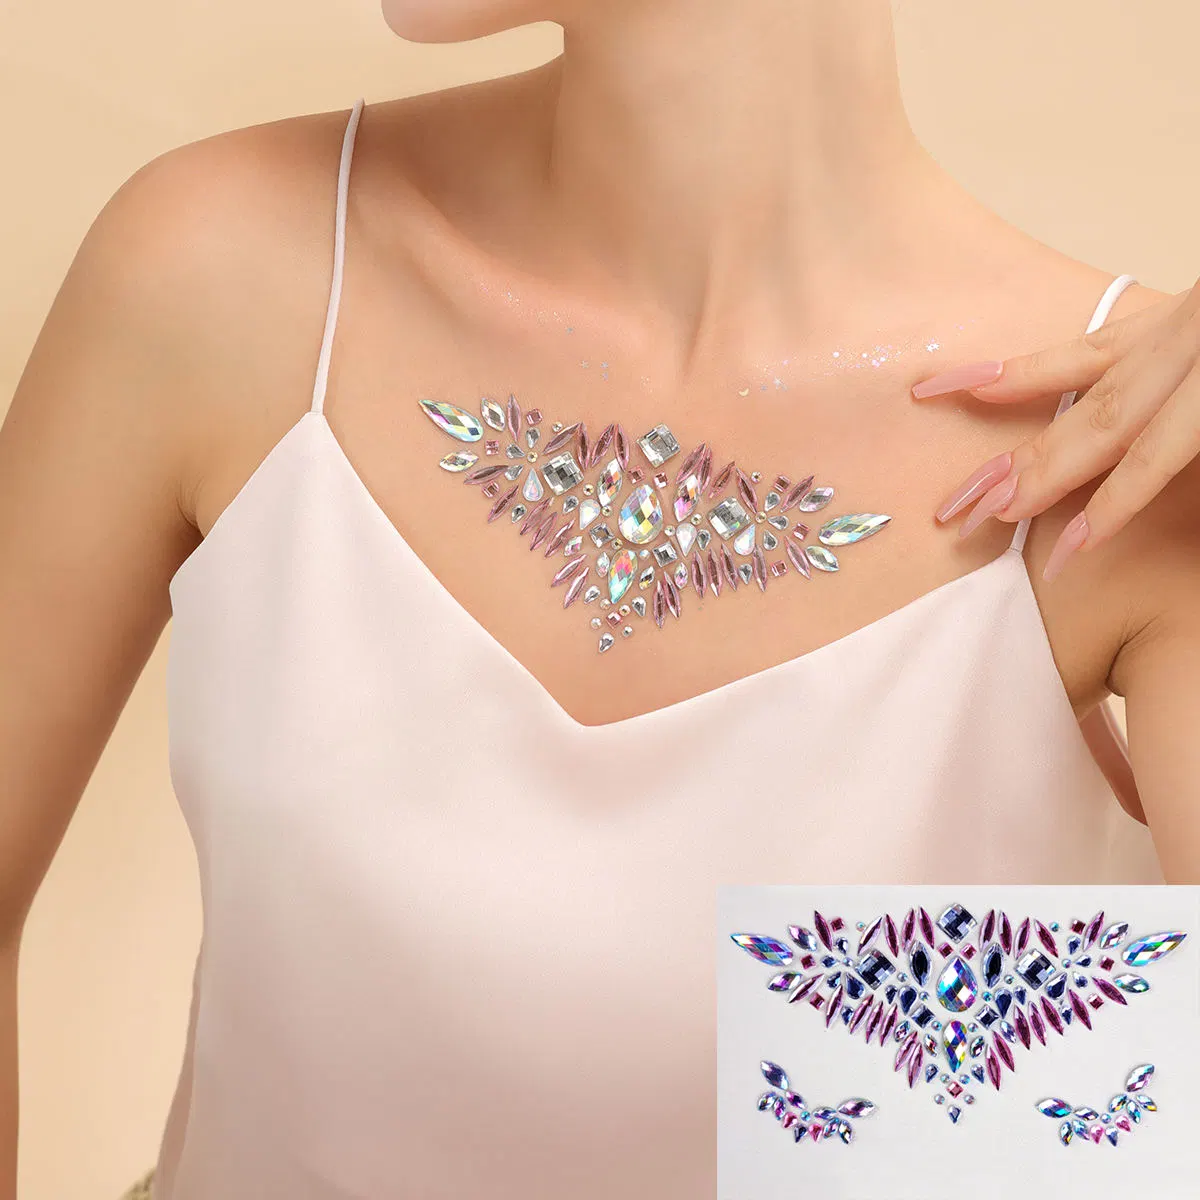 Diamond Rhinestone Decorative Jewels Body Art Chest Crystal Gem Tattoo Stickers Tattoo